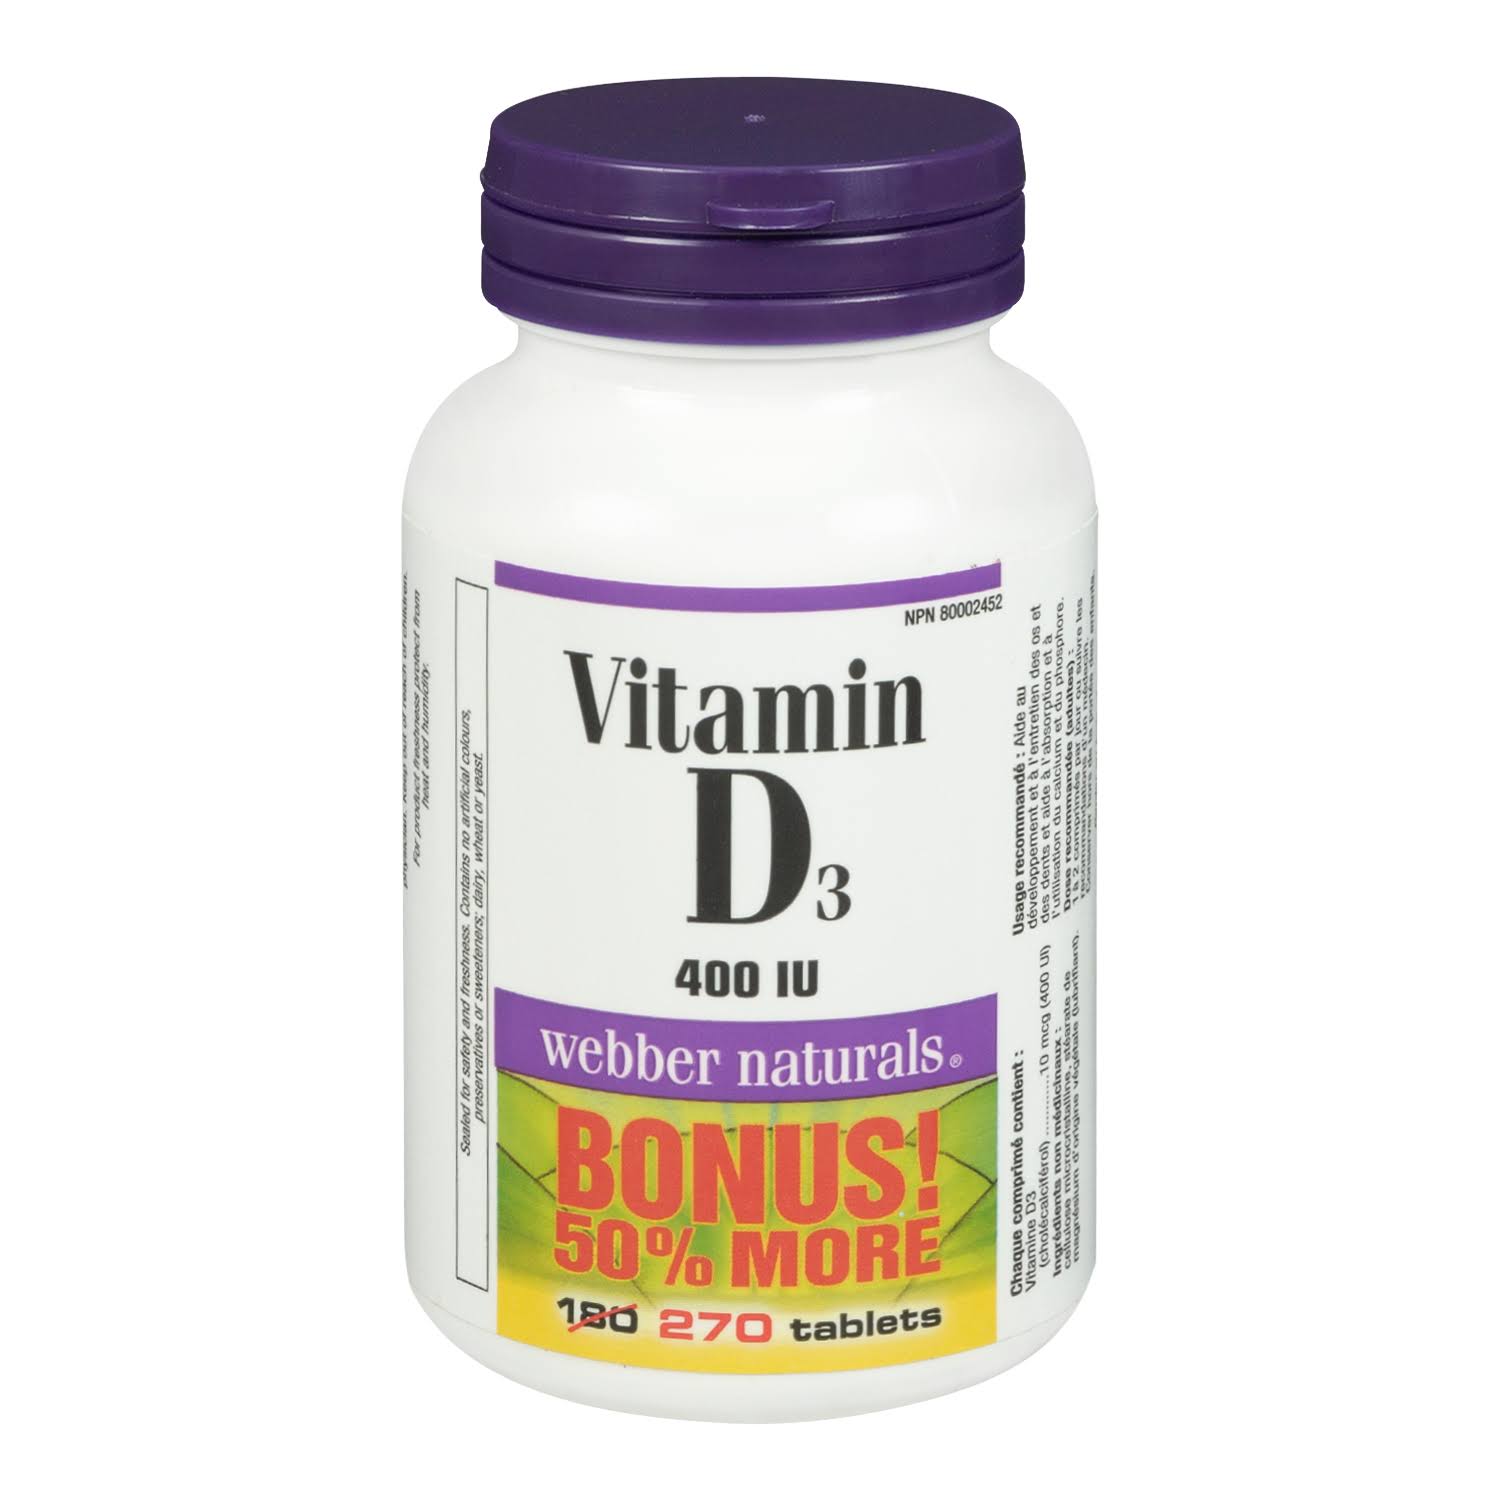 Webber Naturals Vitamin D3, 400 IU